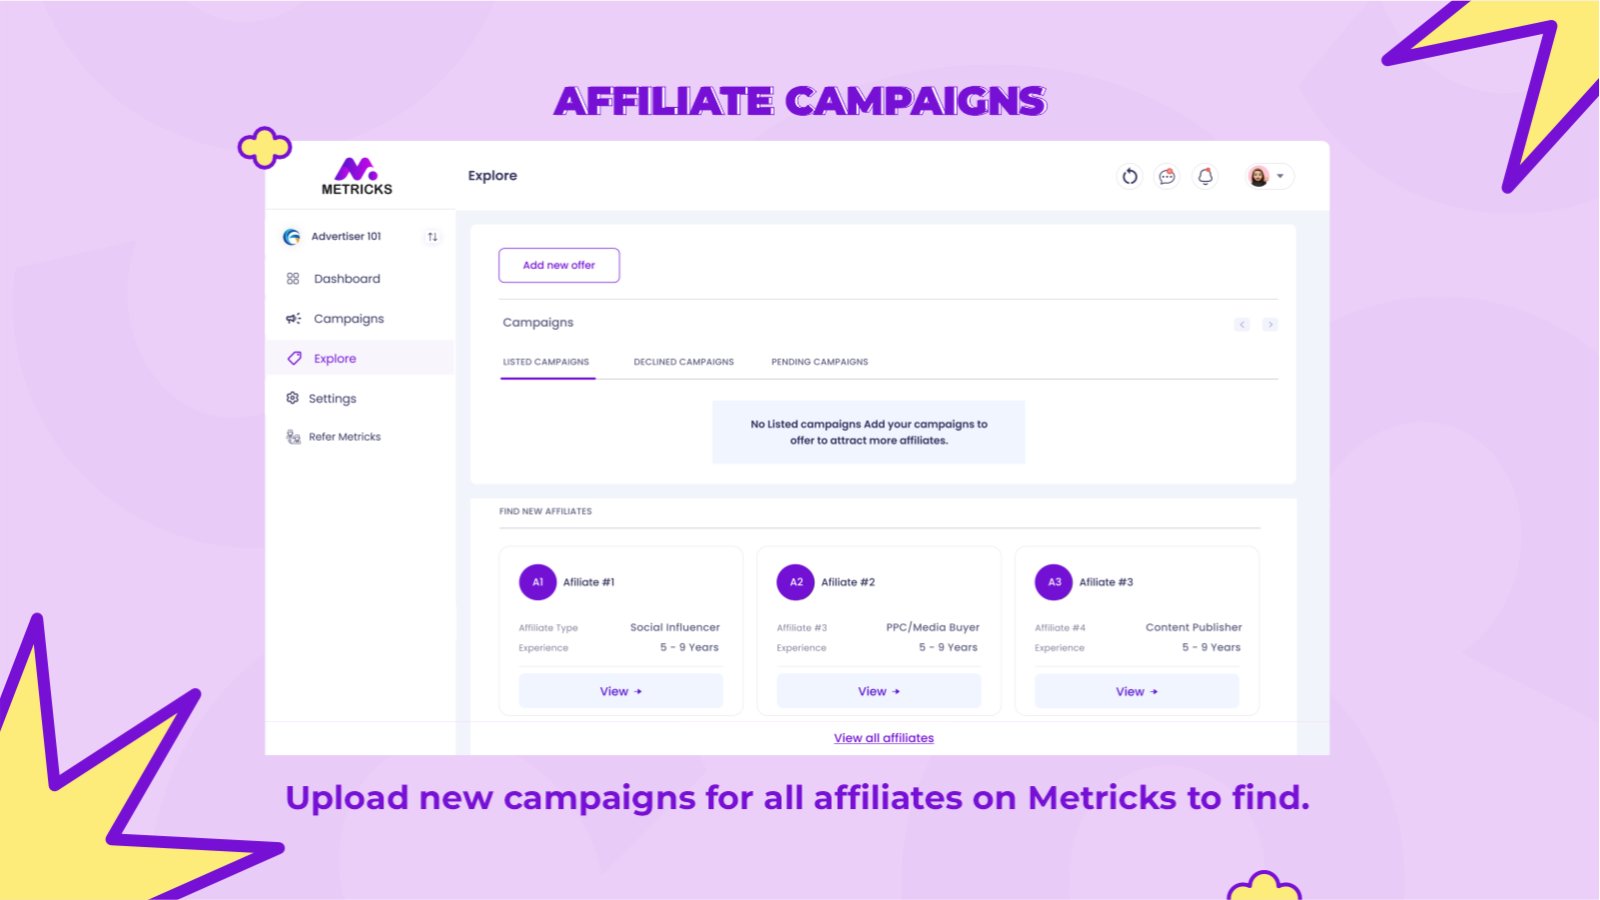 Maak uw campagnes openbaar voor affiliates op Metricks om te vinden